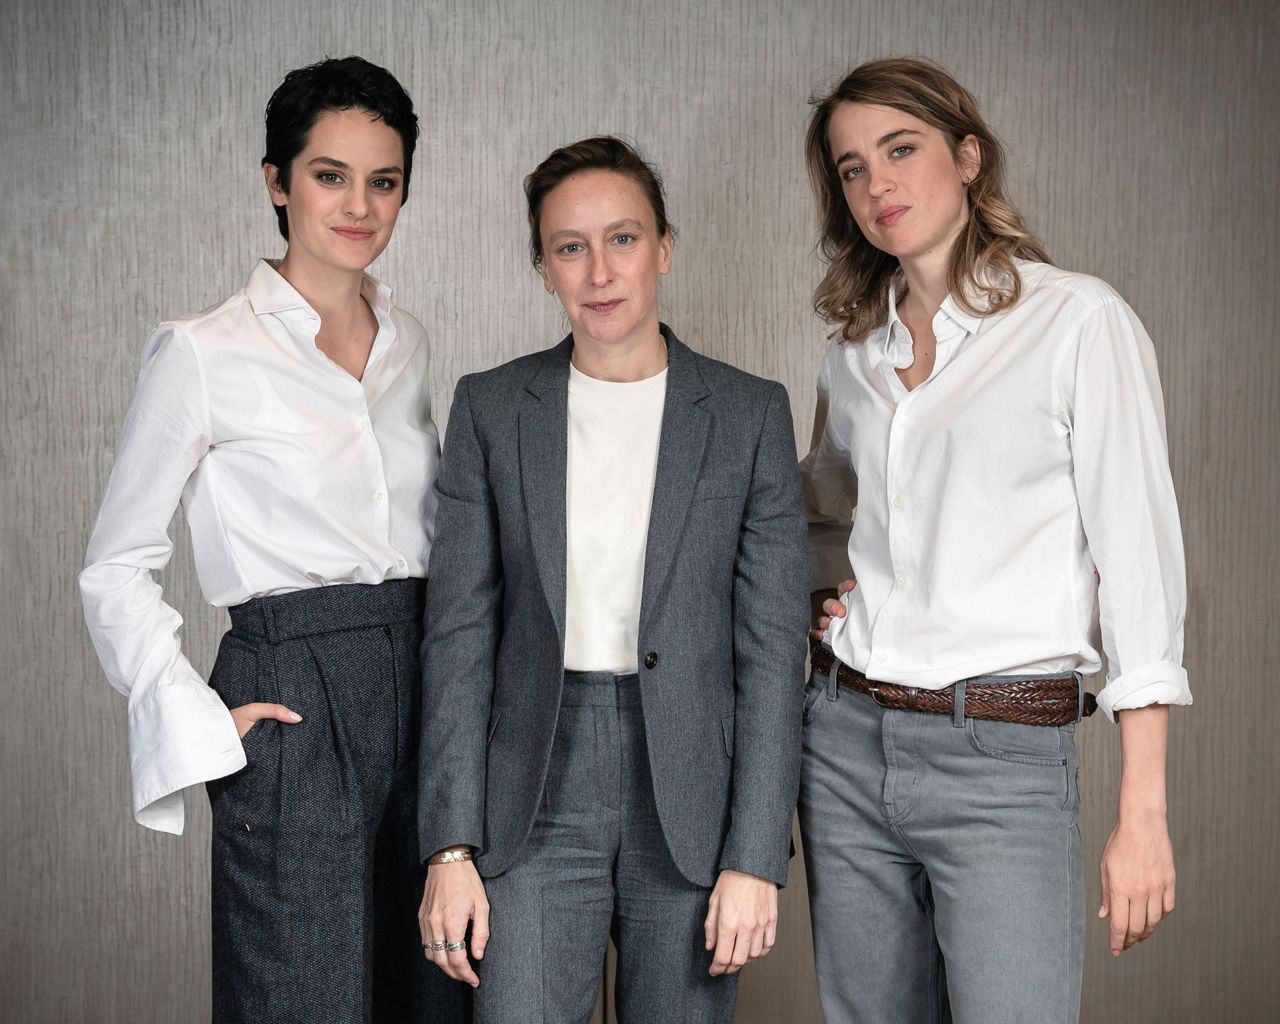 Céline Sciamma, Adèle Haenel & Noémie Merlant Discuss 'Portrait of